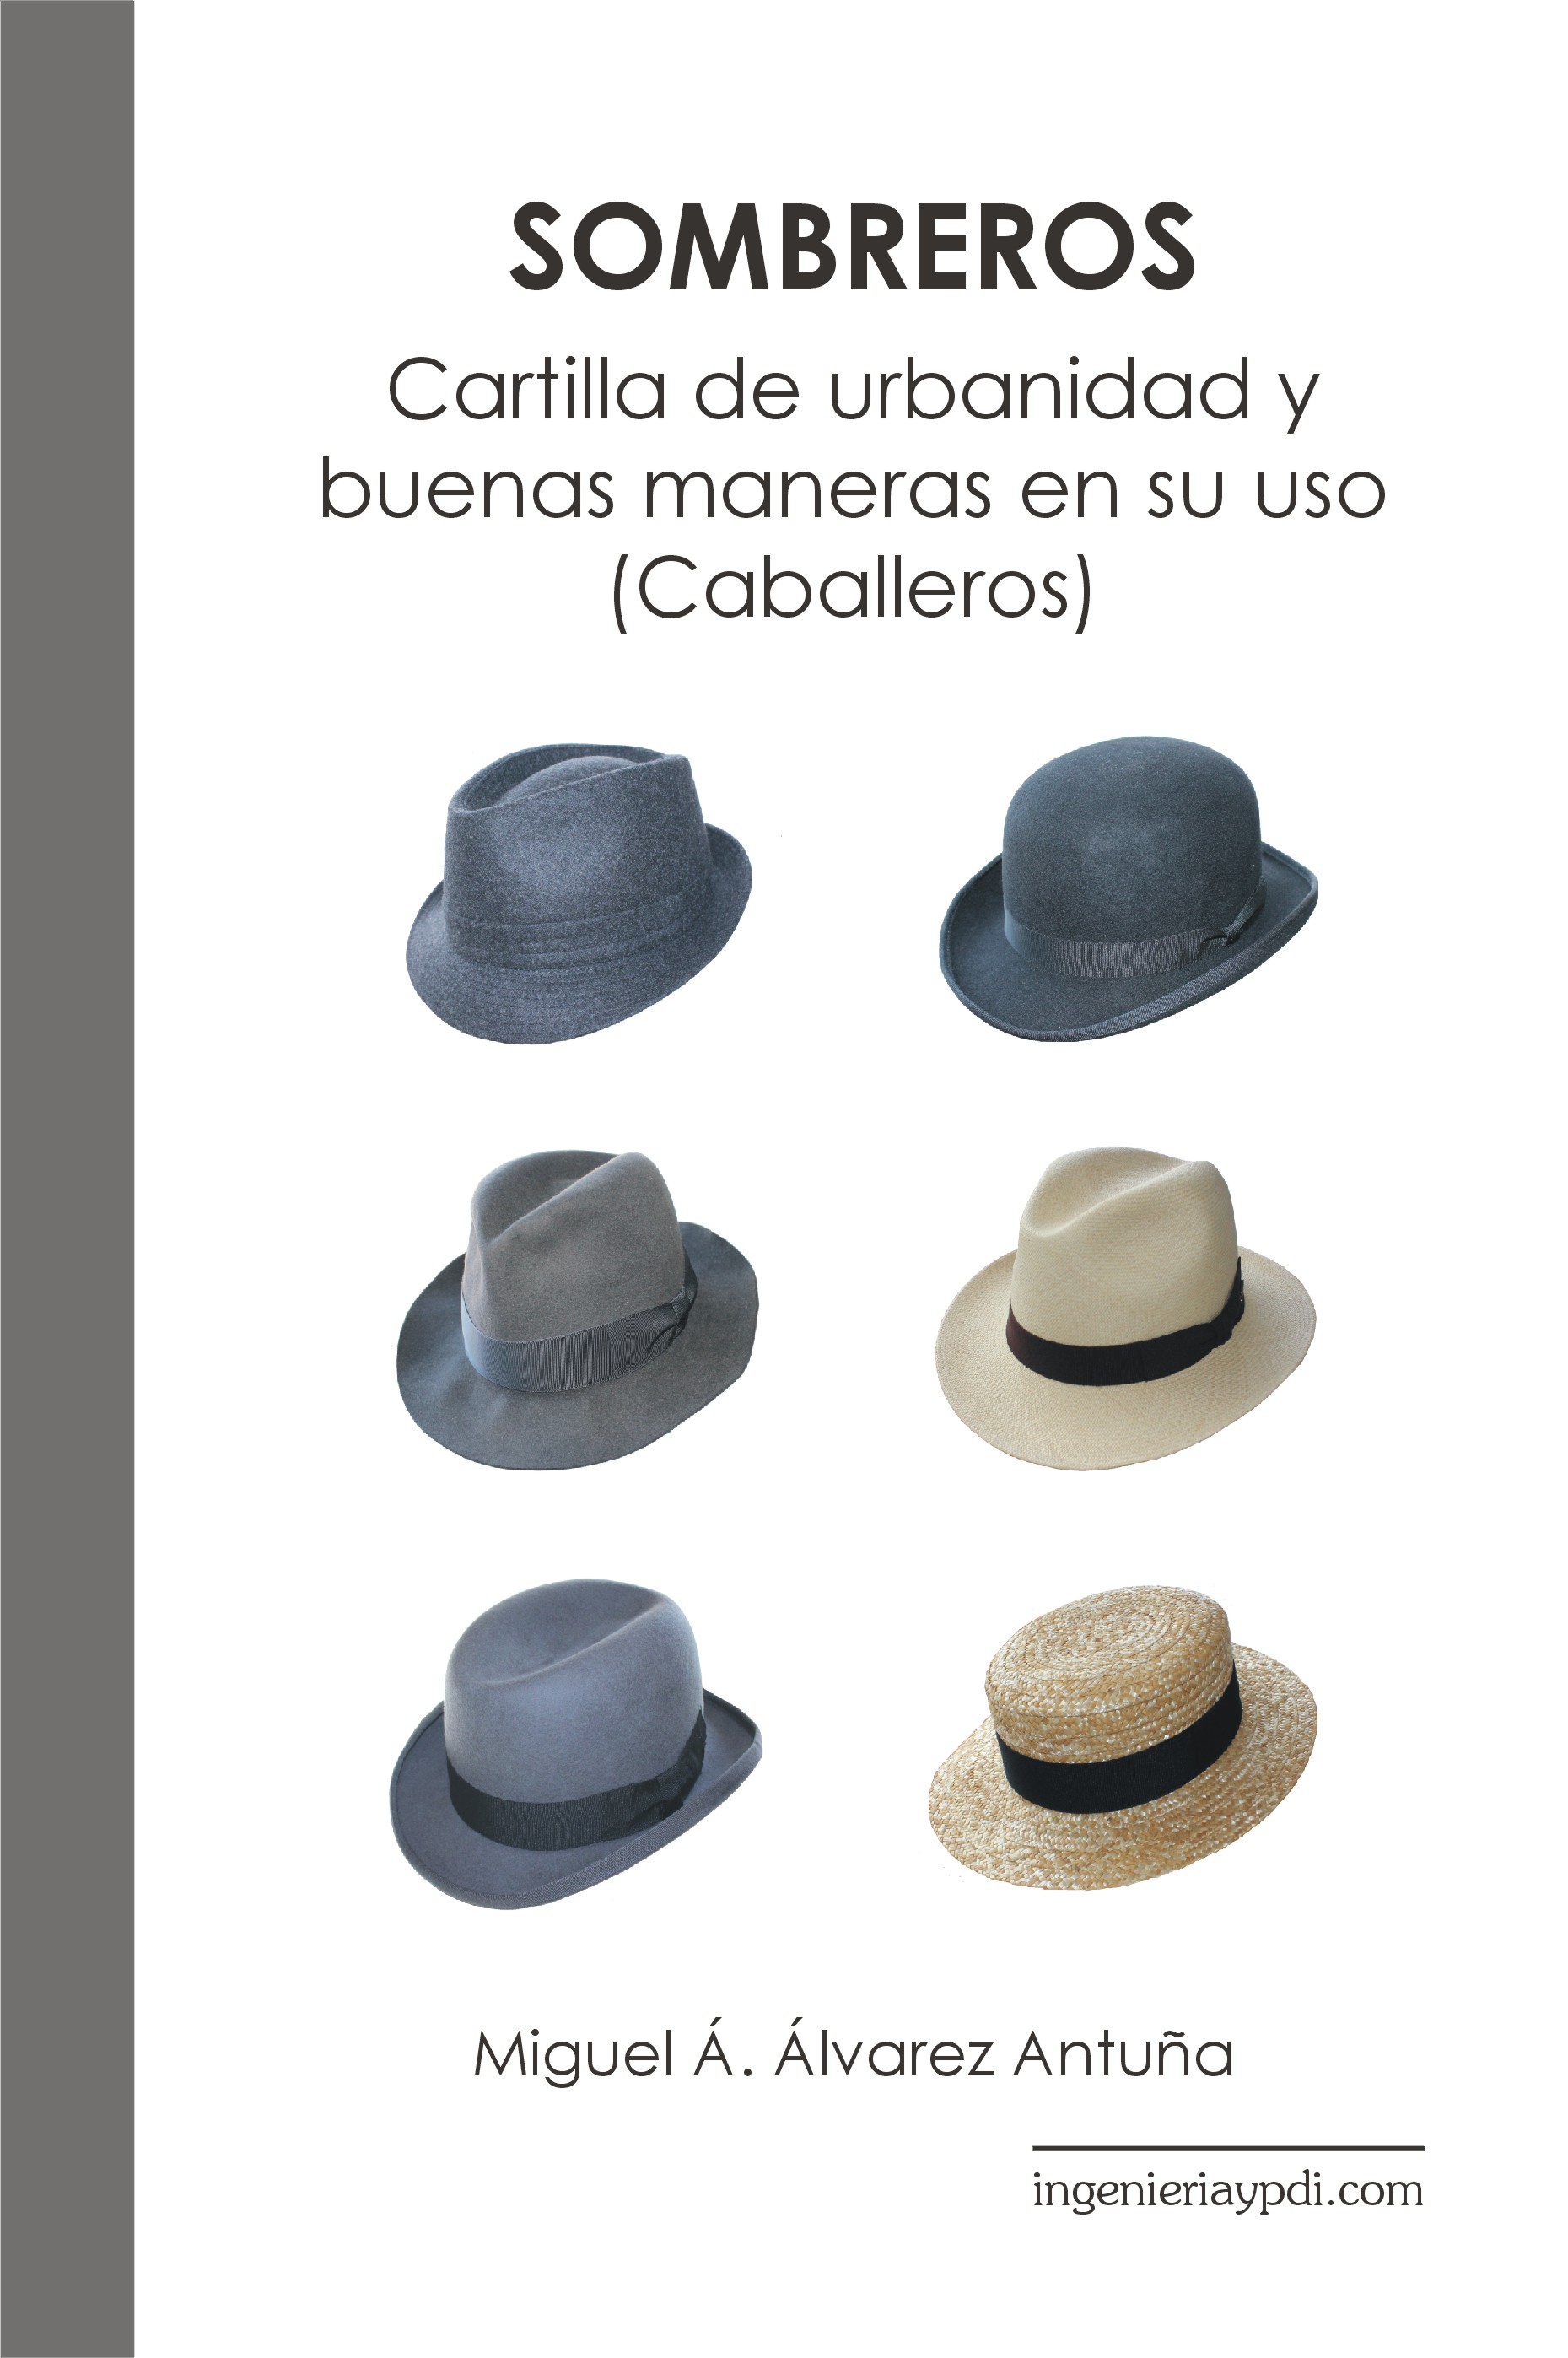 Libro: Cartilla de urbanidad y buenas maneras en el uso del sombrero. (Caballeros).